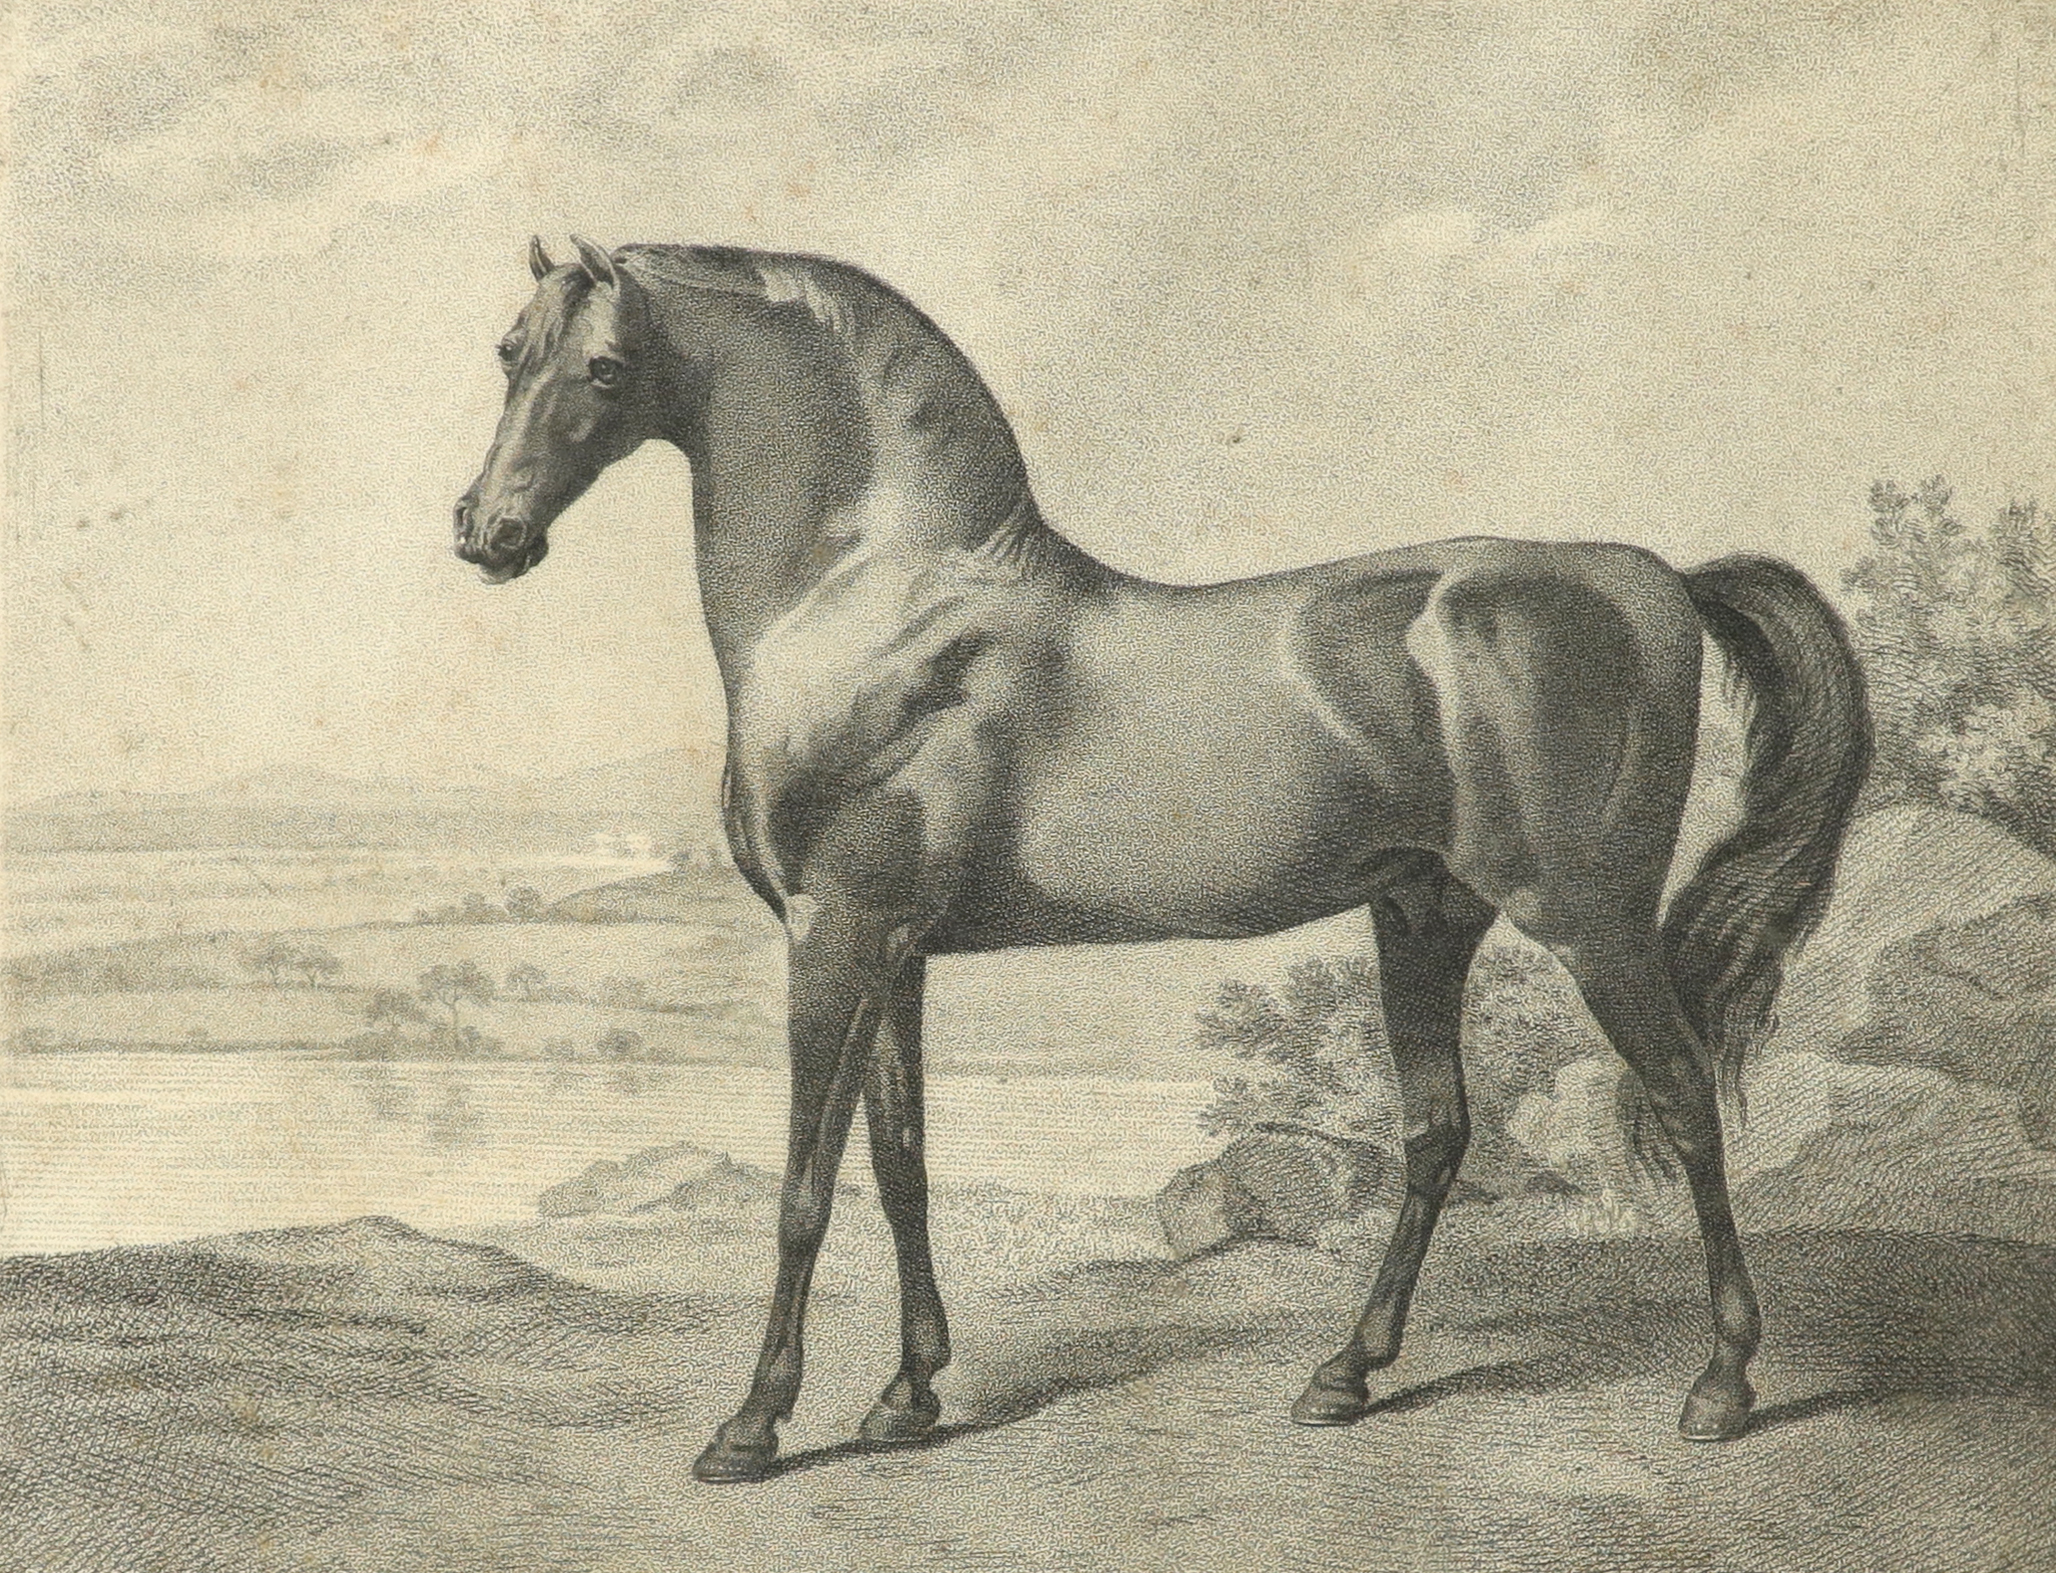 George Townly Stubbs (1756-1815) after George Stubbs ARA (1724-1806) Warren Hastings' Arabian